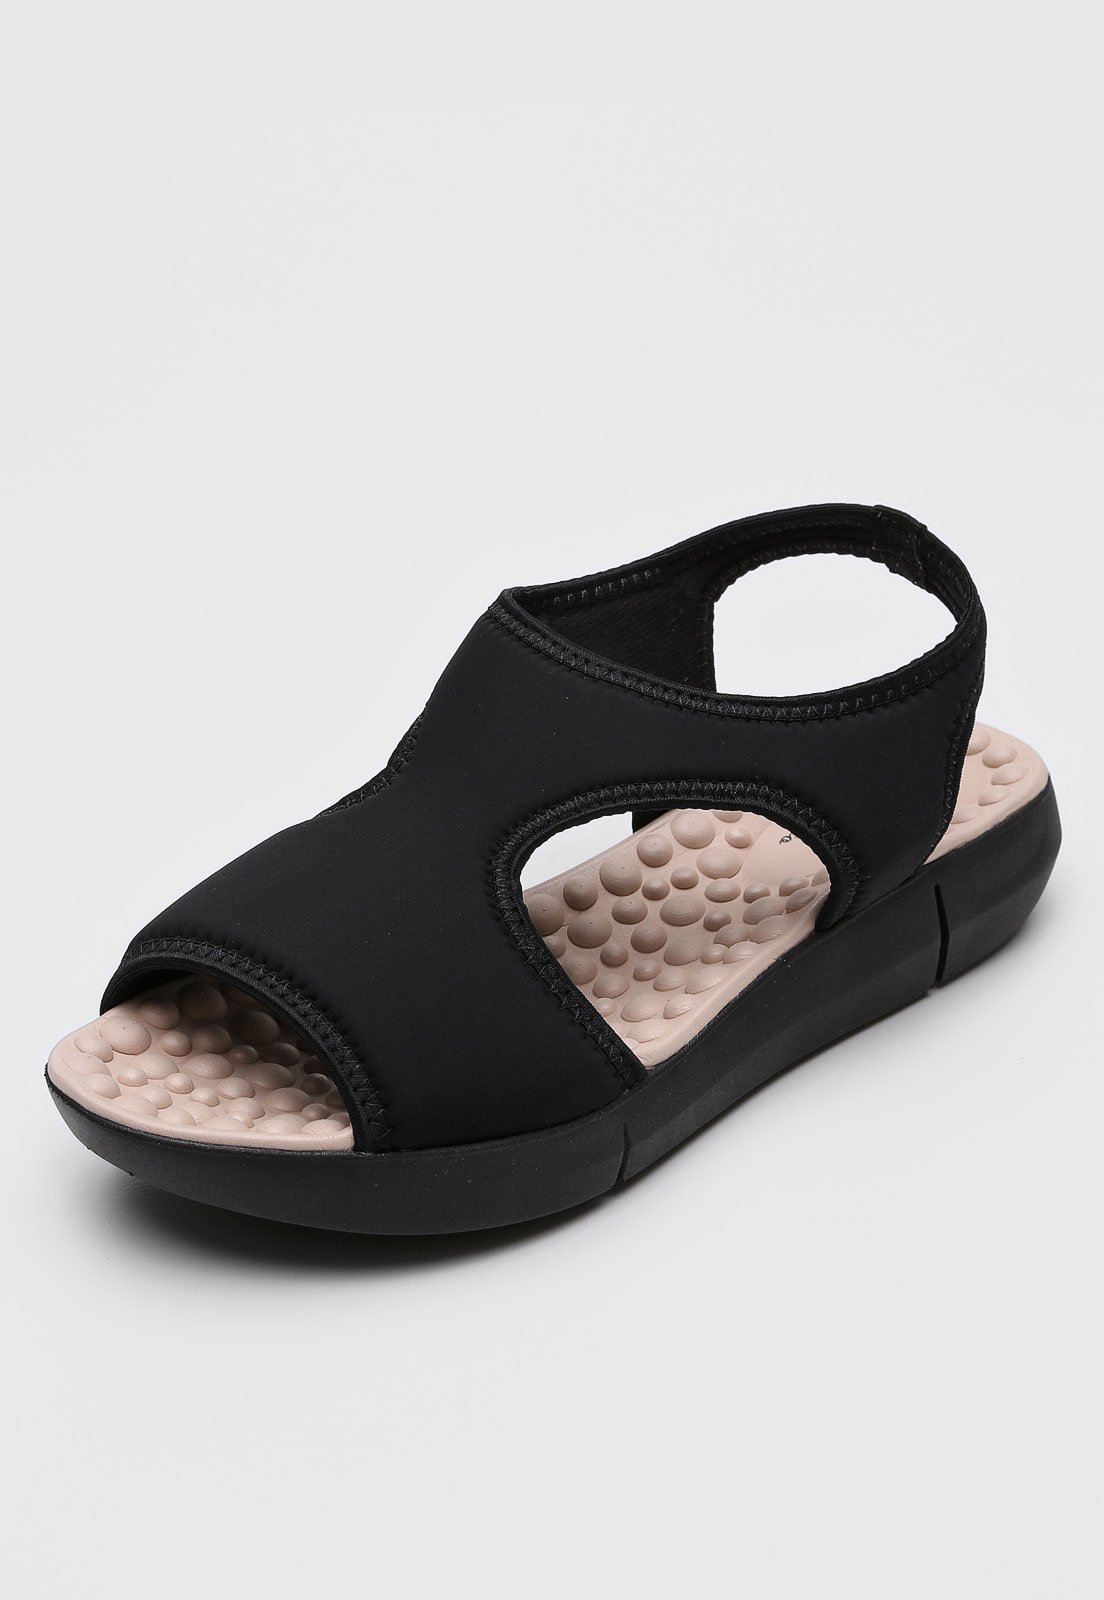 modare ultra conforto sandalia